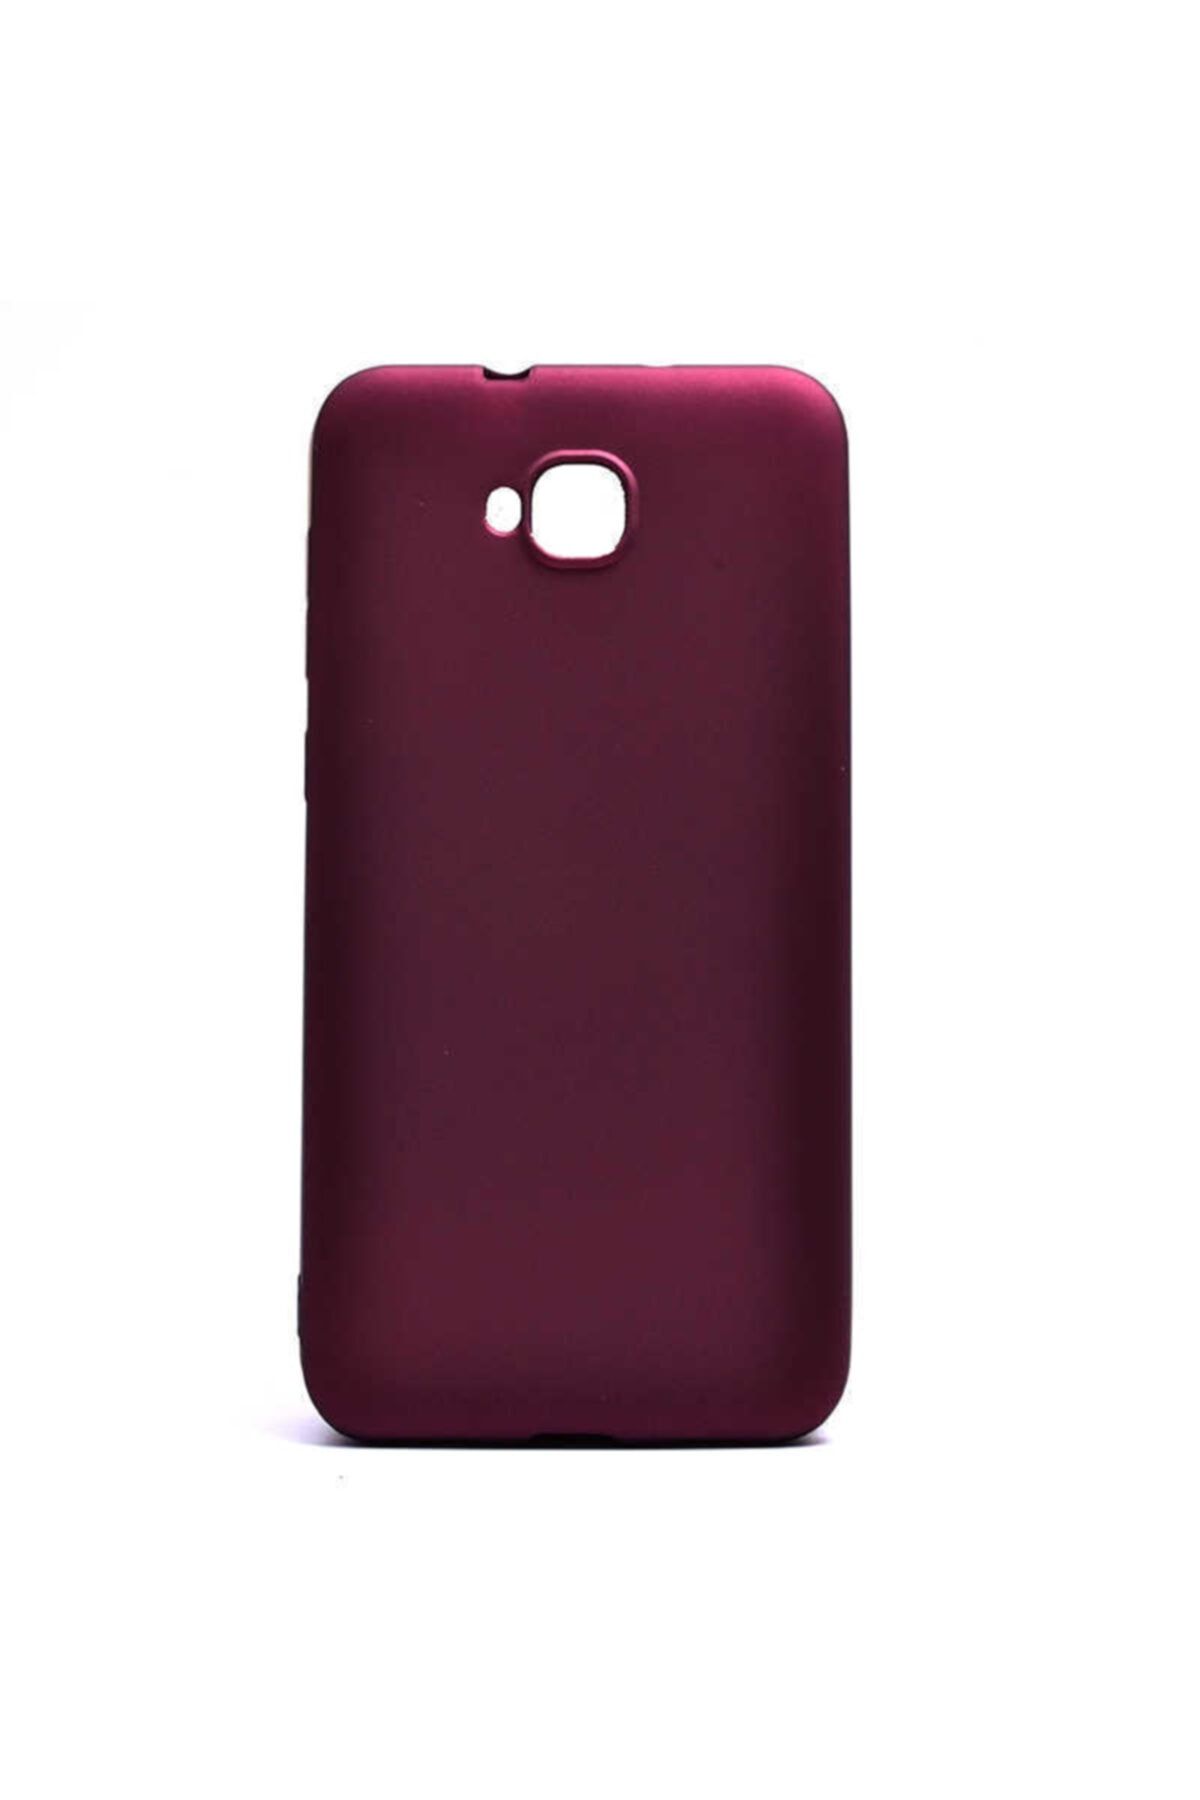 İncisoft Asus Zenfone 4 Selfie Zd553kl Uyumlu Ince Yumuşak Soft Tasarım Renkli Silikon Kılıf